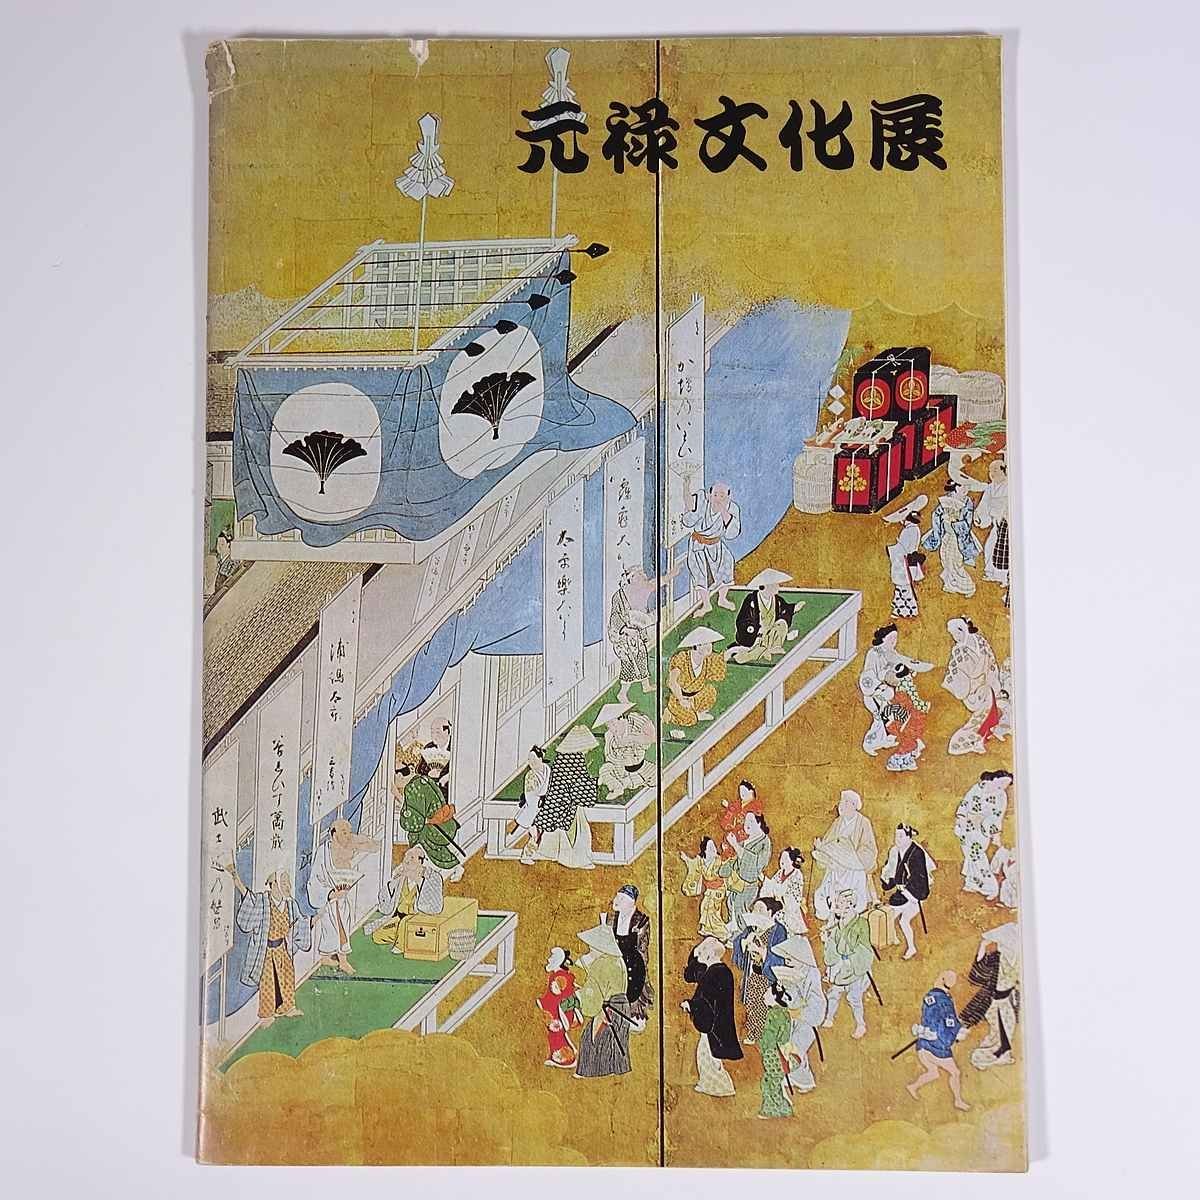 जेनरोकू संस्कृति प्रदर्शनी किंतेत्सु डिपार्टमेंट स्टोर ओसाका योमिउरी शिंबुन 1967 बड़ी पुस्तक प्रदर्शनी चित्र कैटलॉग कैटलॉग कला कला पेंटिंग शिल्प चीनी मिट्टी आदि।, शिल्प, सचित्र सूची, अन्य